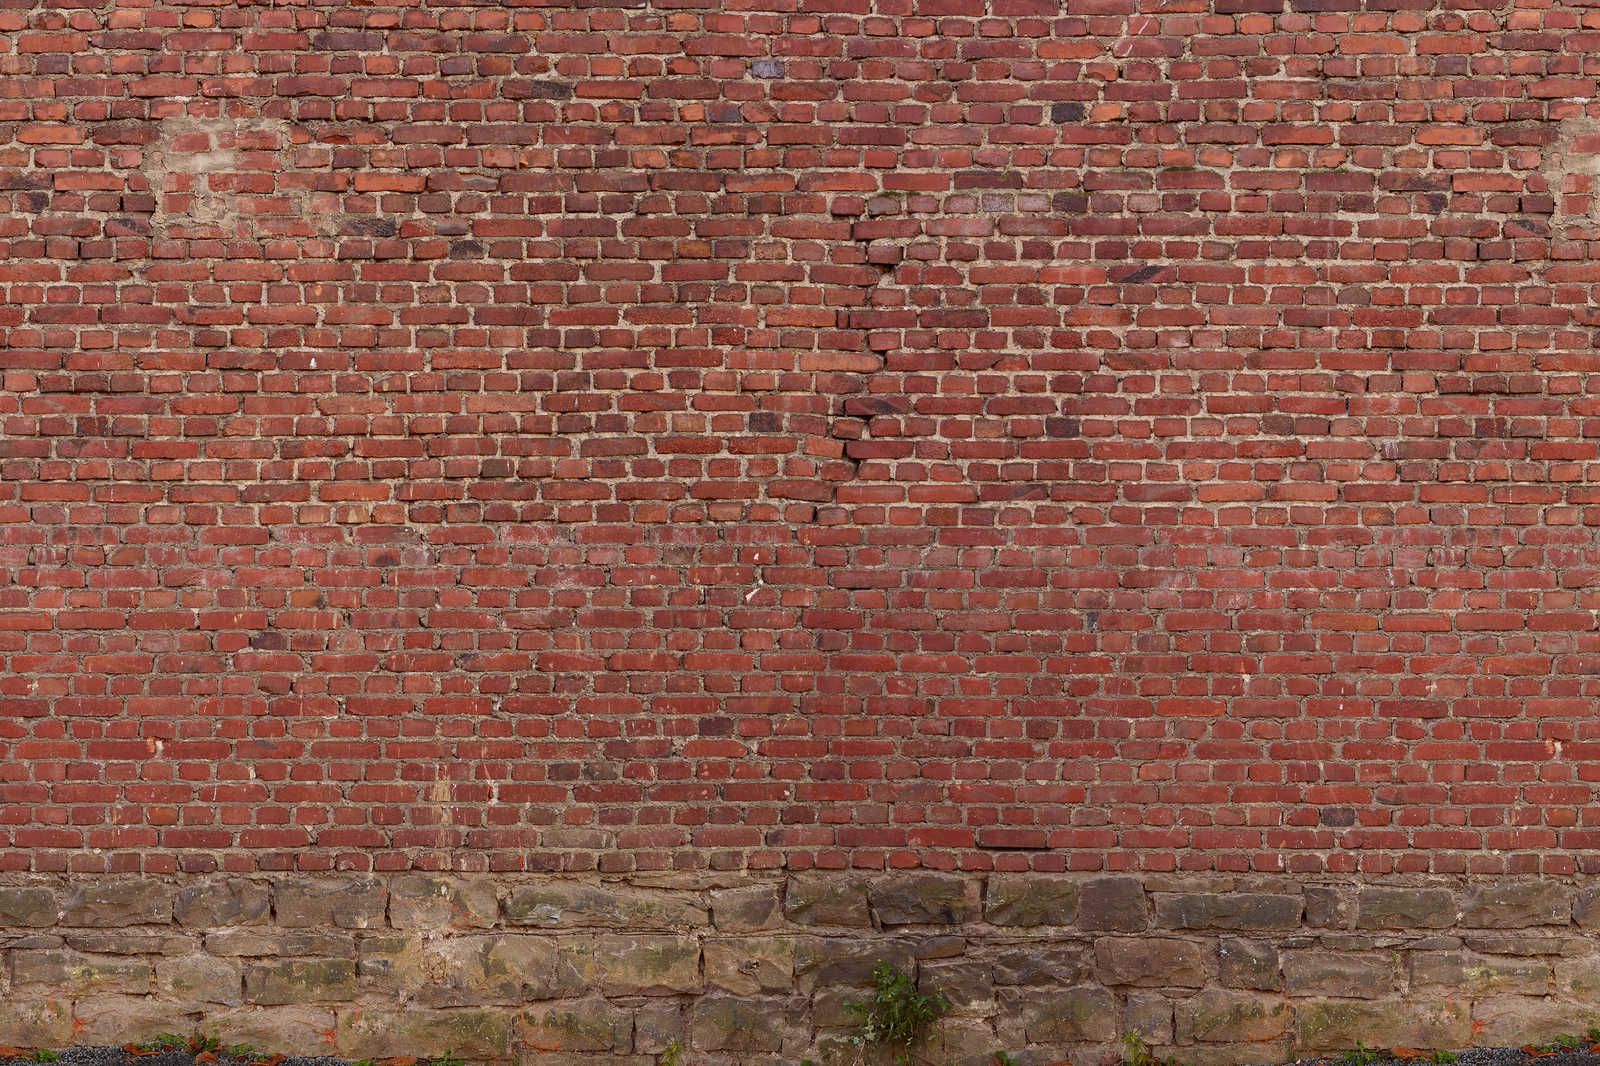             Rote Ziegelmauer Leinwandbild – 1,20 m x 0,80 m
        